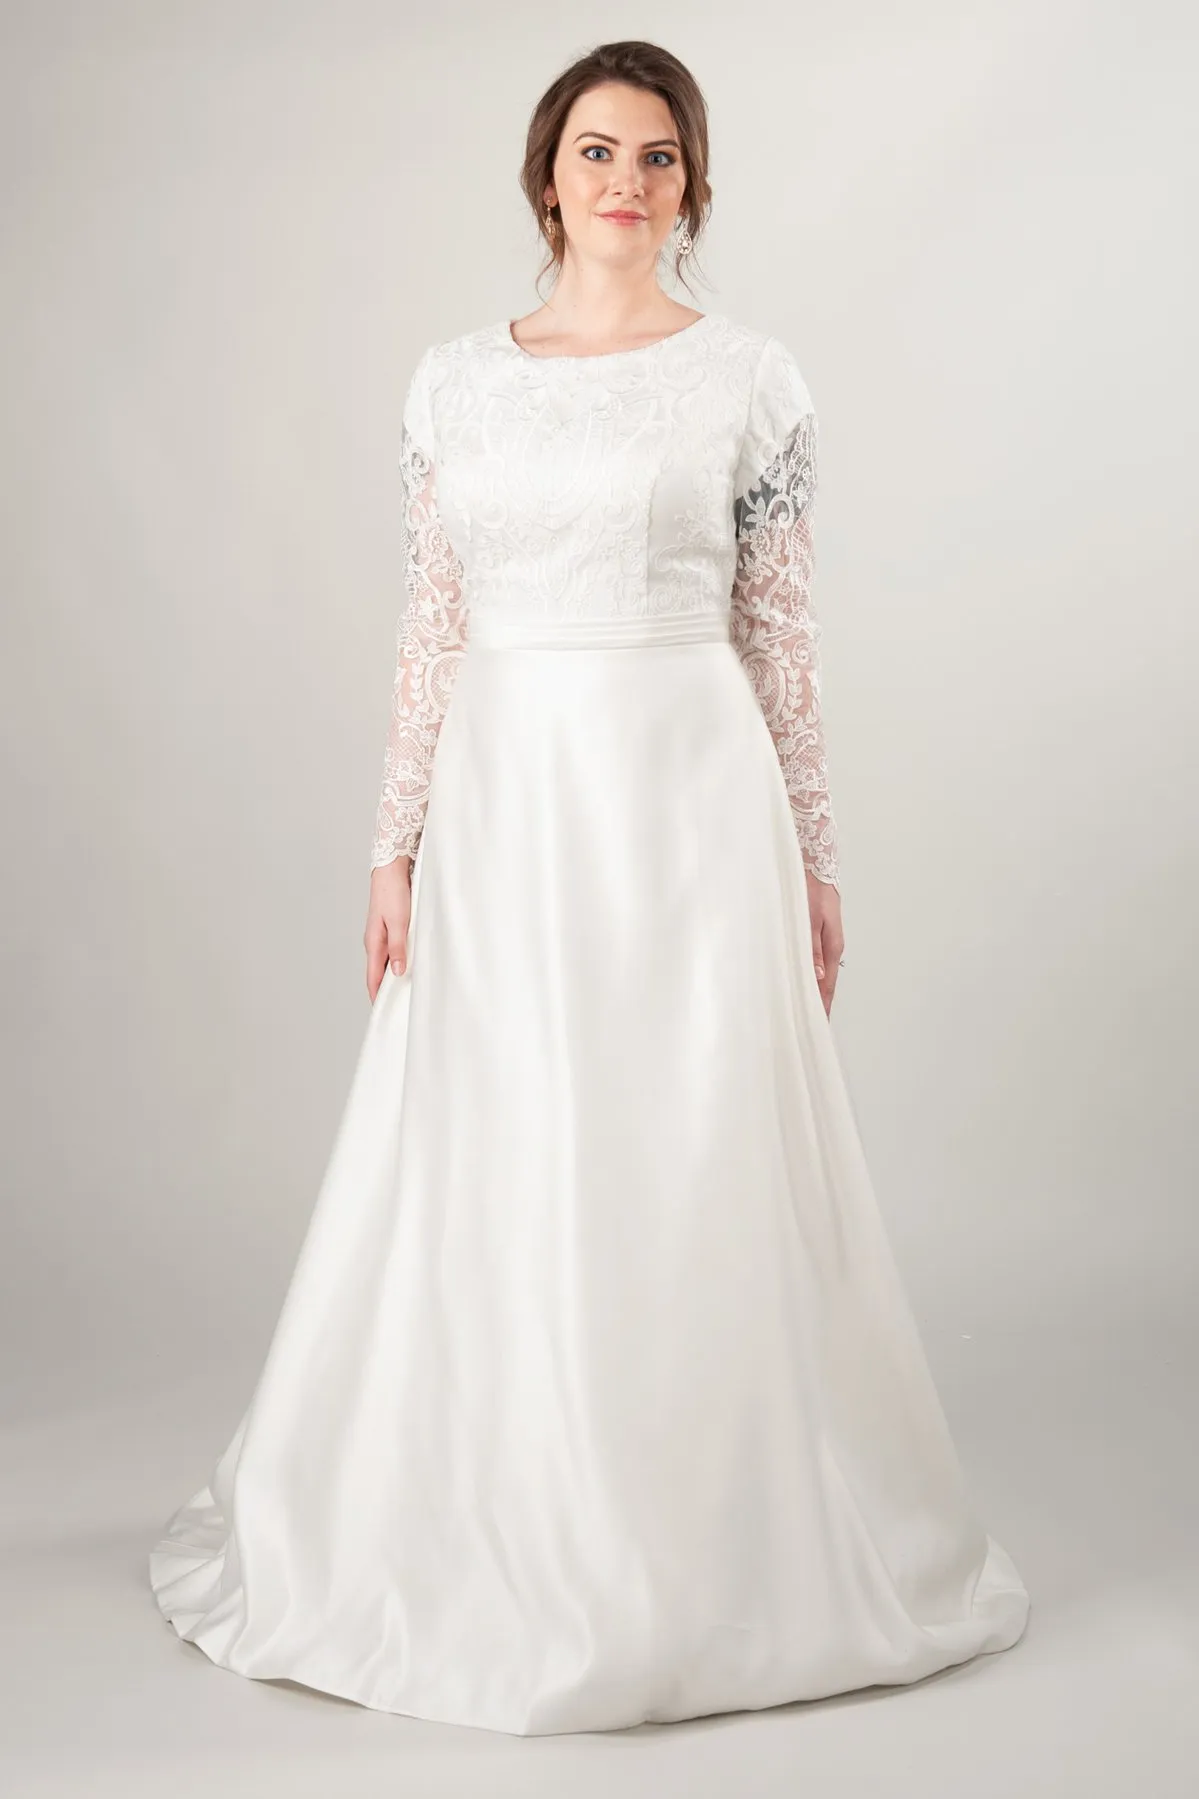 2019 A-Linie Plus Size Spitzen-Satin-Brautkleid mit langen Ärmeln, Juwelenausschnitt, Knöpfen am Rücken, vollfiguriges, bescheidenes Damen-Brautkleid